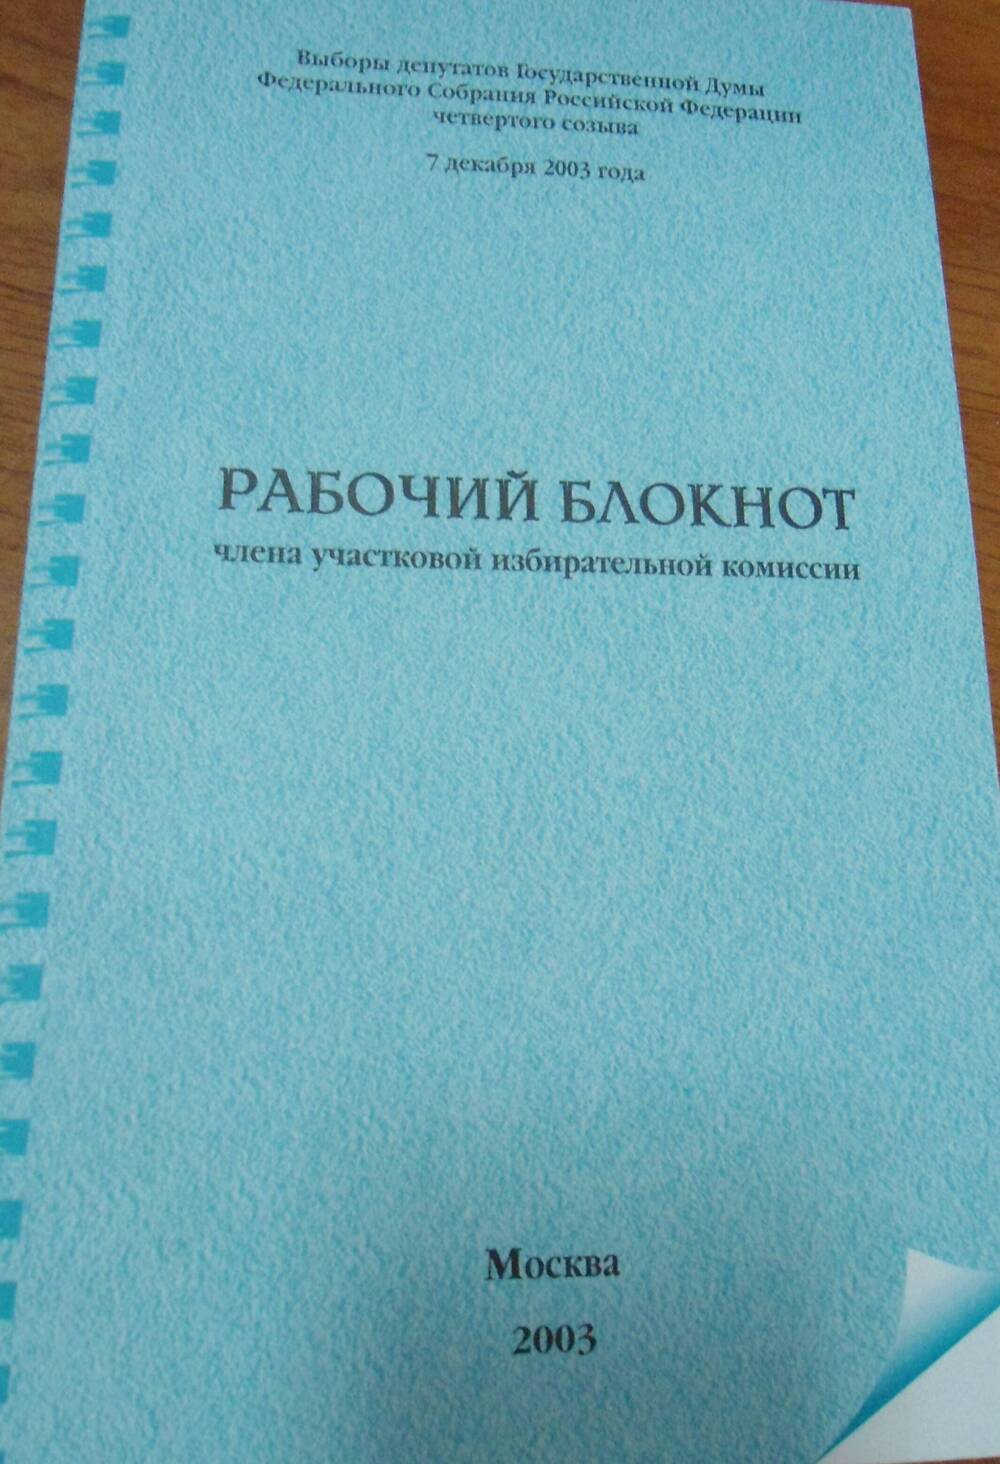 Брошюра Рабочий блокнот члена участковой избирательной комиссии по выборам  7 декабря 2003 г.